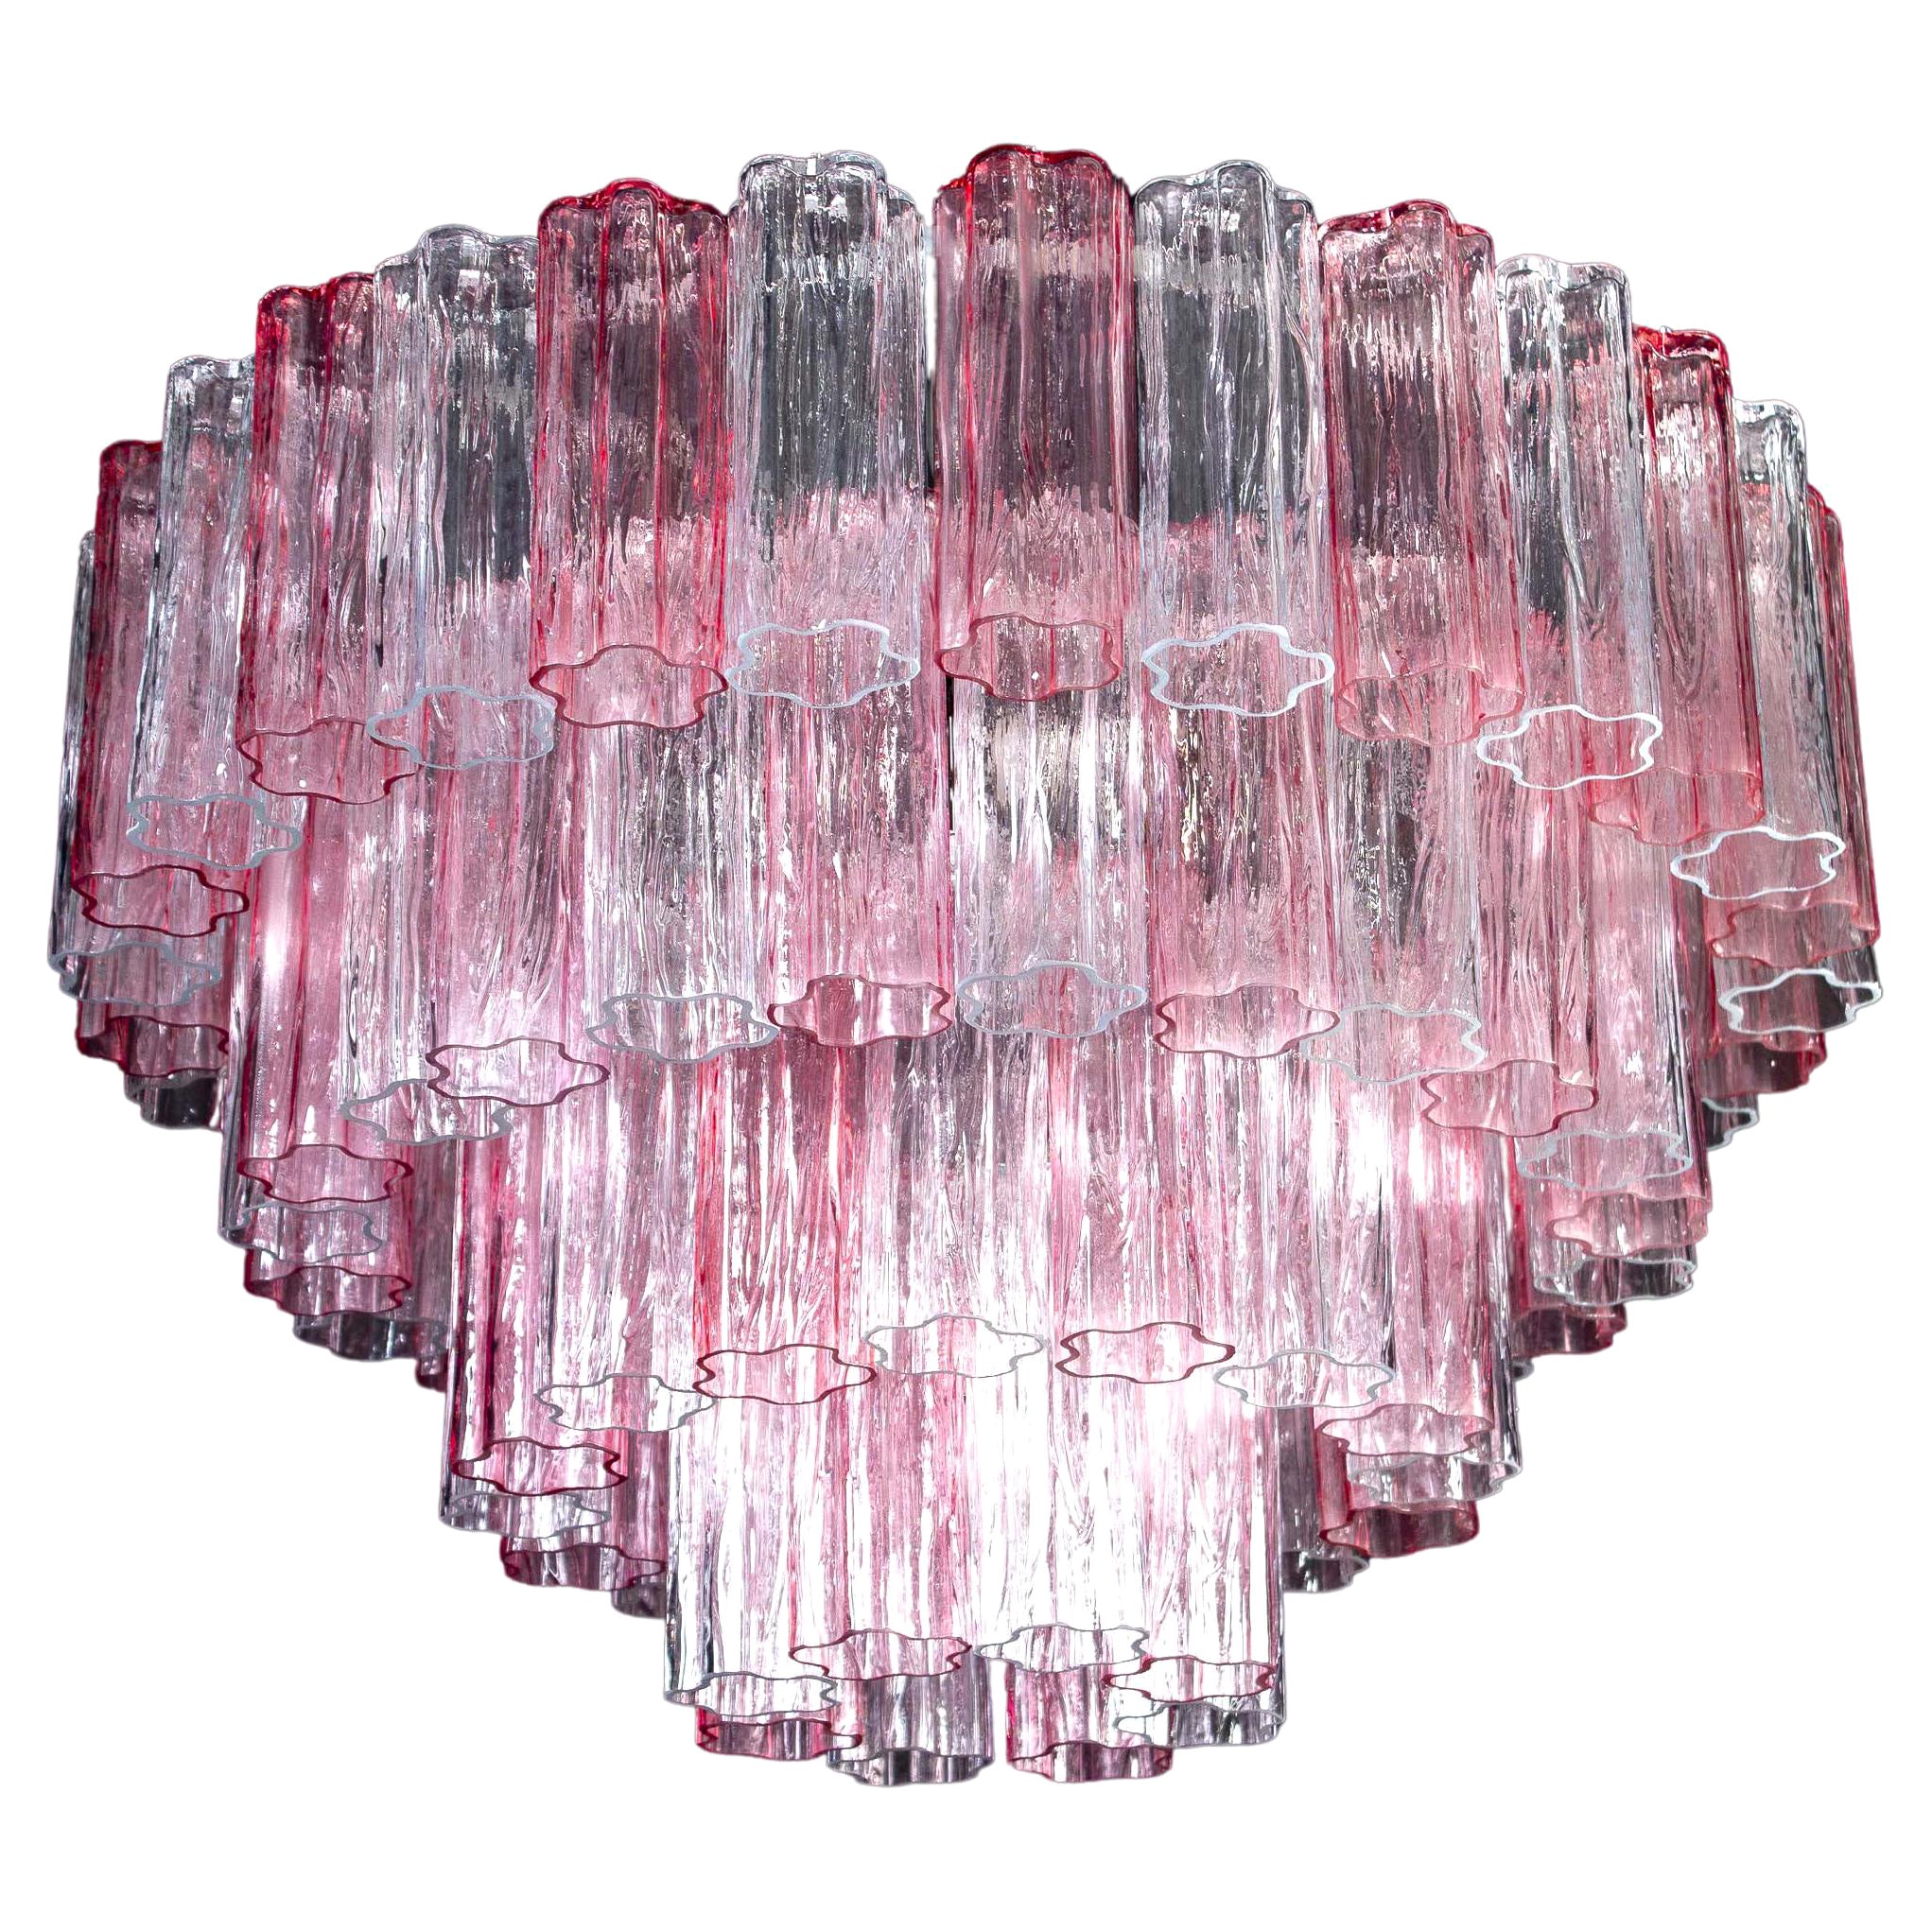 Ce lustre extraordinaire est composé de 78 verres de Murano 'Tronchi' de couleur rose et glace
par 20 cm de haut.


